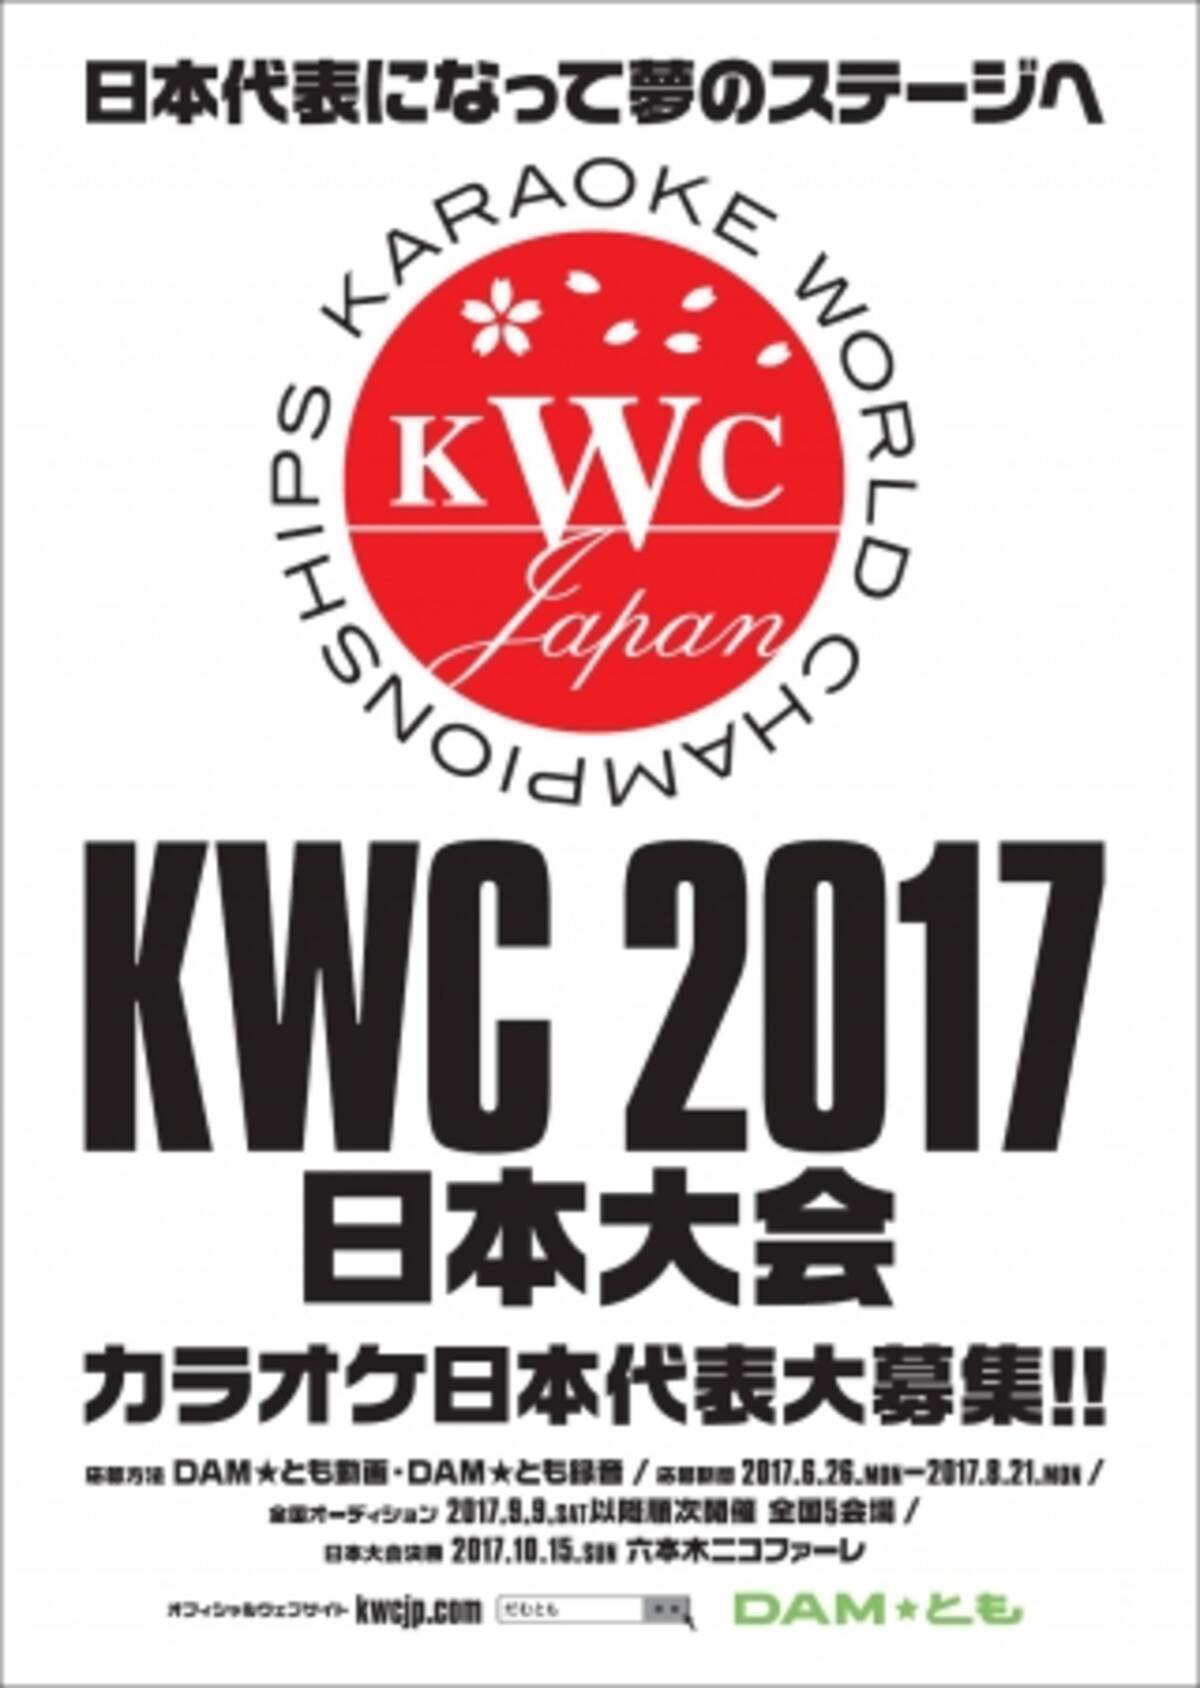 世界チャンピオン2連覇を目指せ Kwc Japan 17オーディション開催決定 17年6月14日 エキサイトニュース 3 4